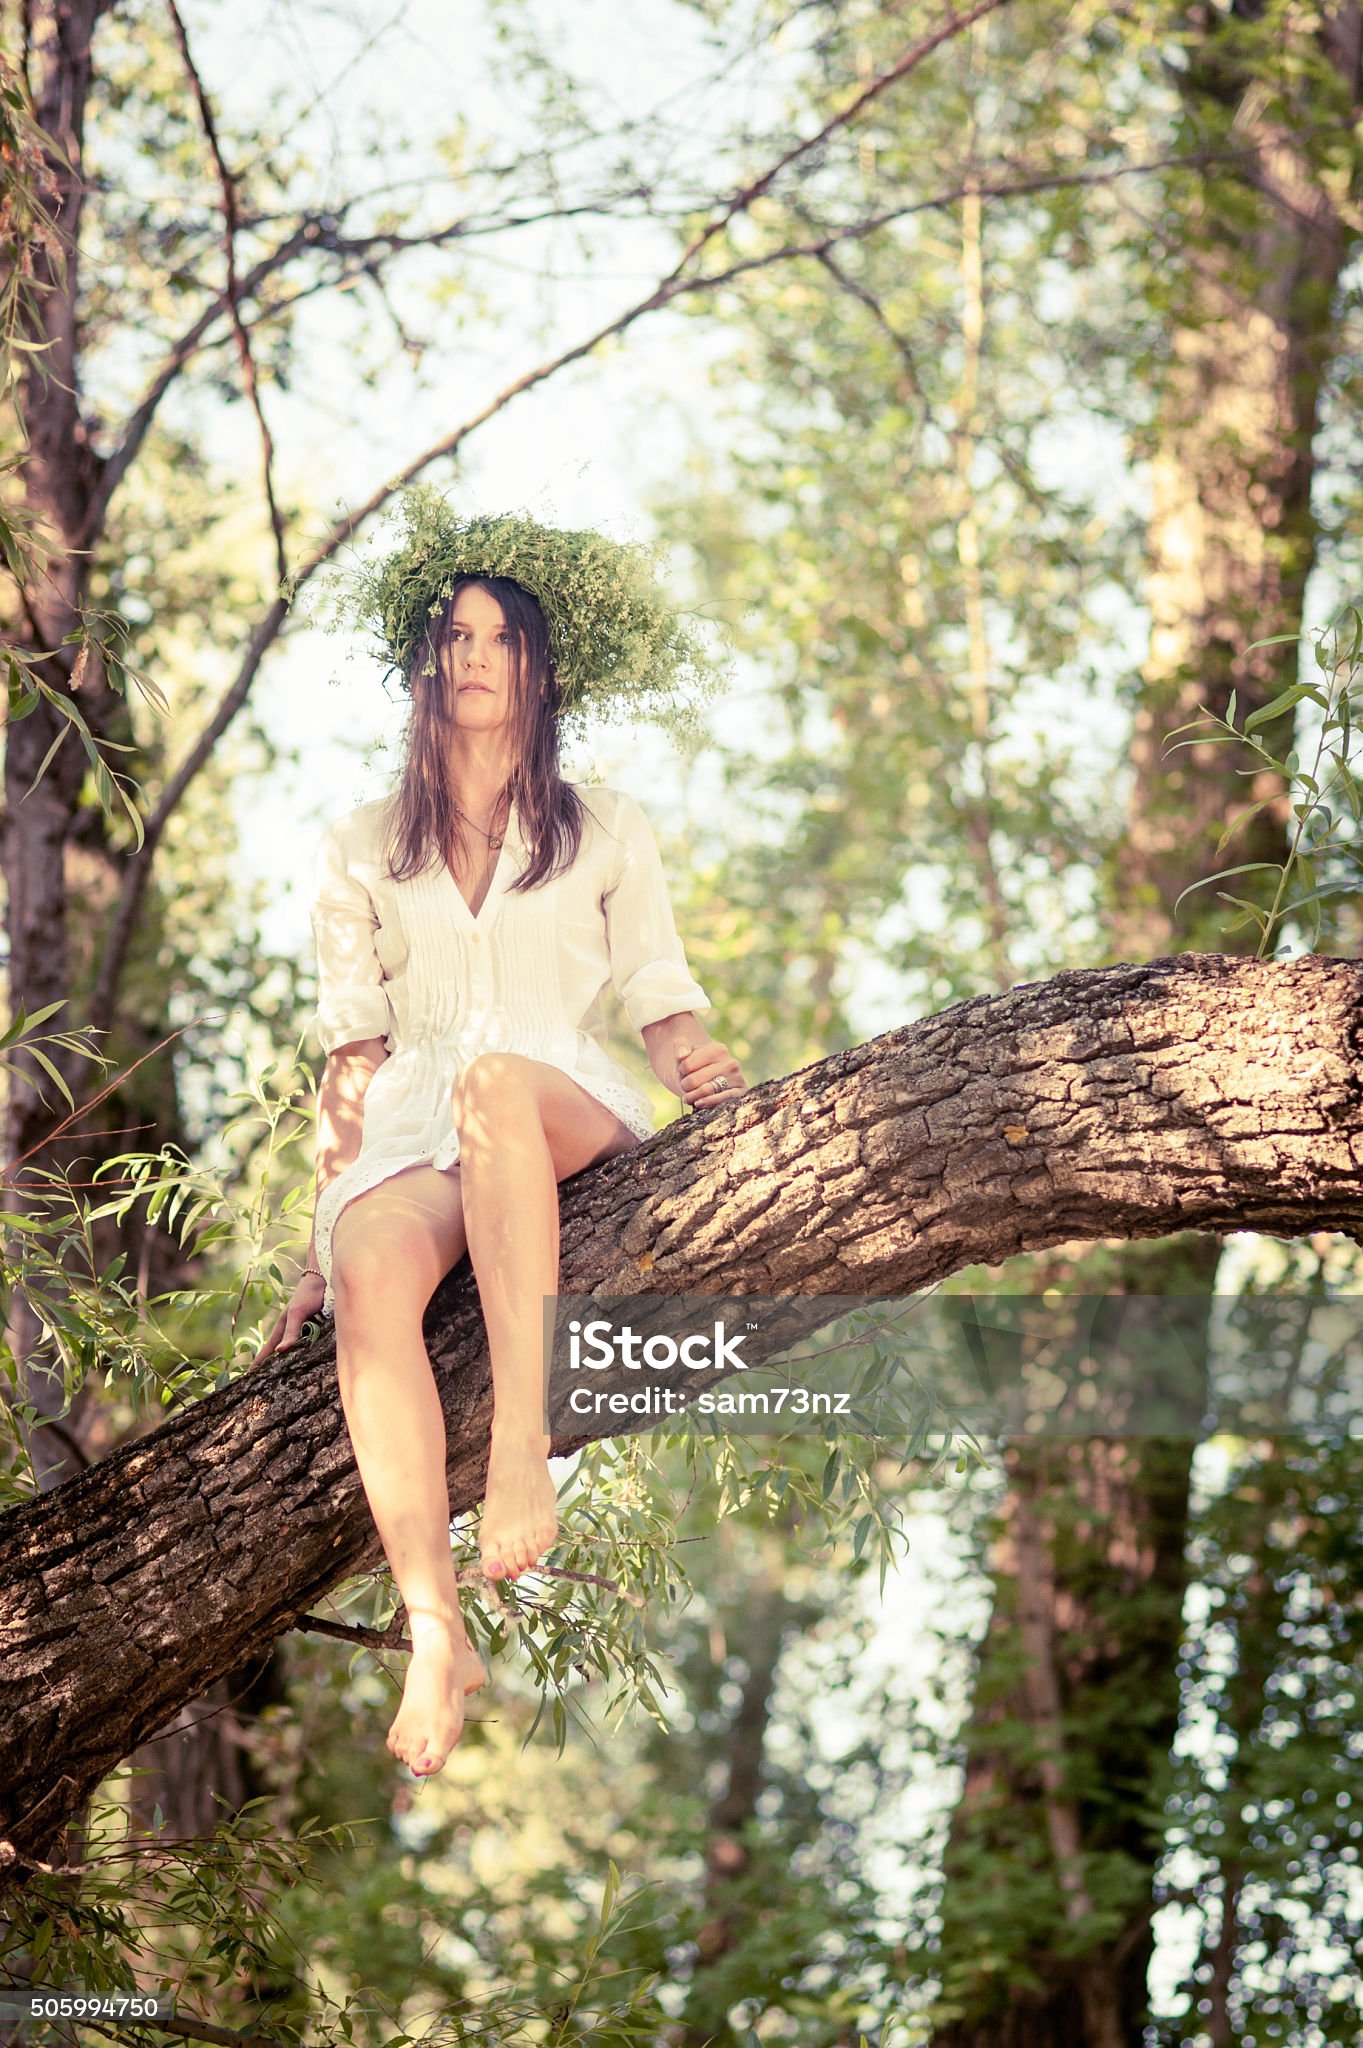 https://media.istockphoto.com/id/505994750/photo/beautiful-woman-sitting-on-tree-in-forest.jpg?s=2048x2048&amp;w=is&amp;k=20&amp;c=tmRBIzqpSPrcj3yfsG9Z2XM6TGE7sLpiSssqDb84dik=